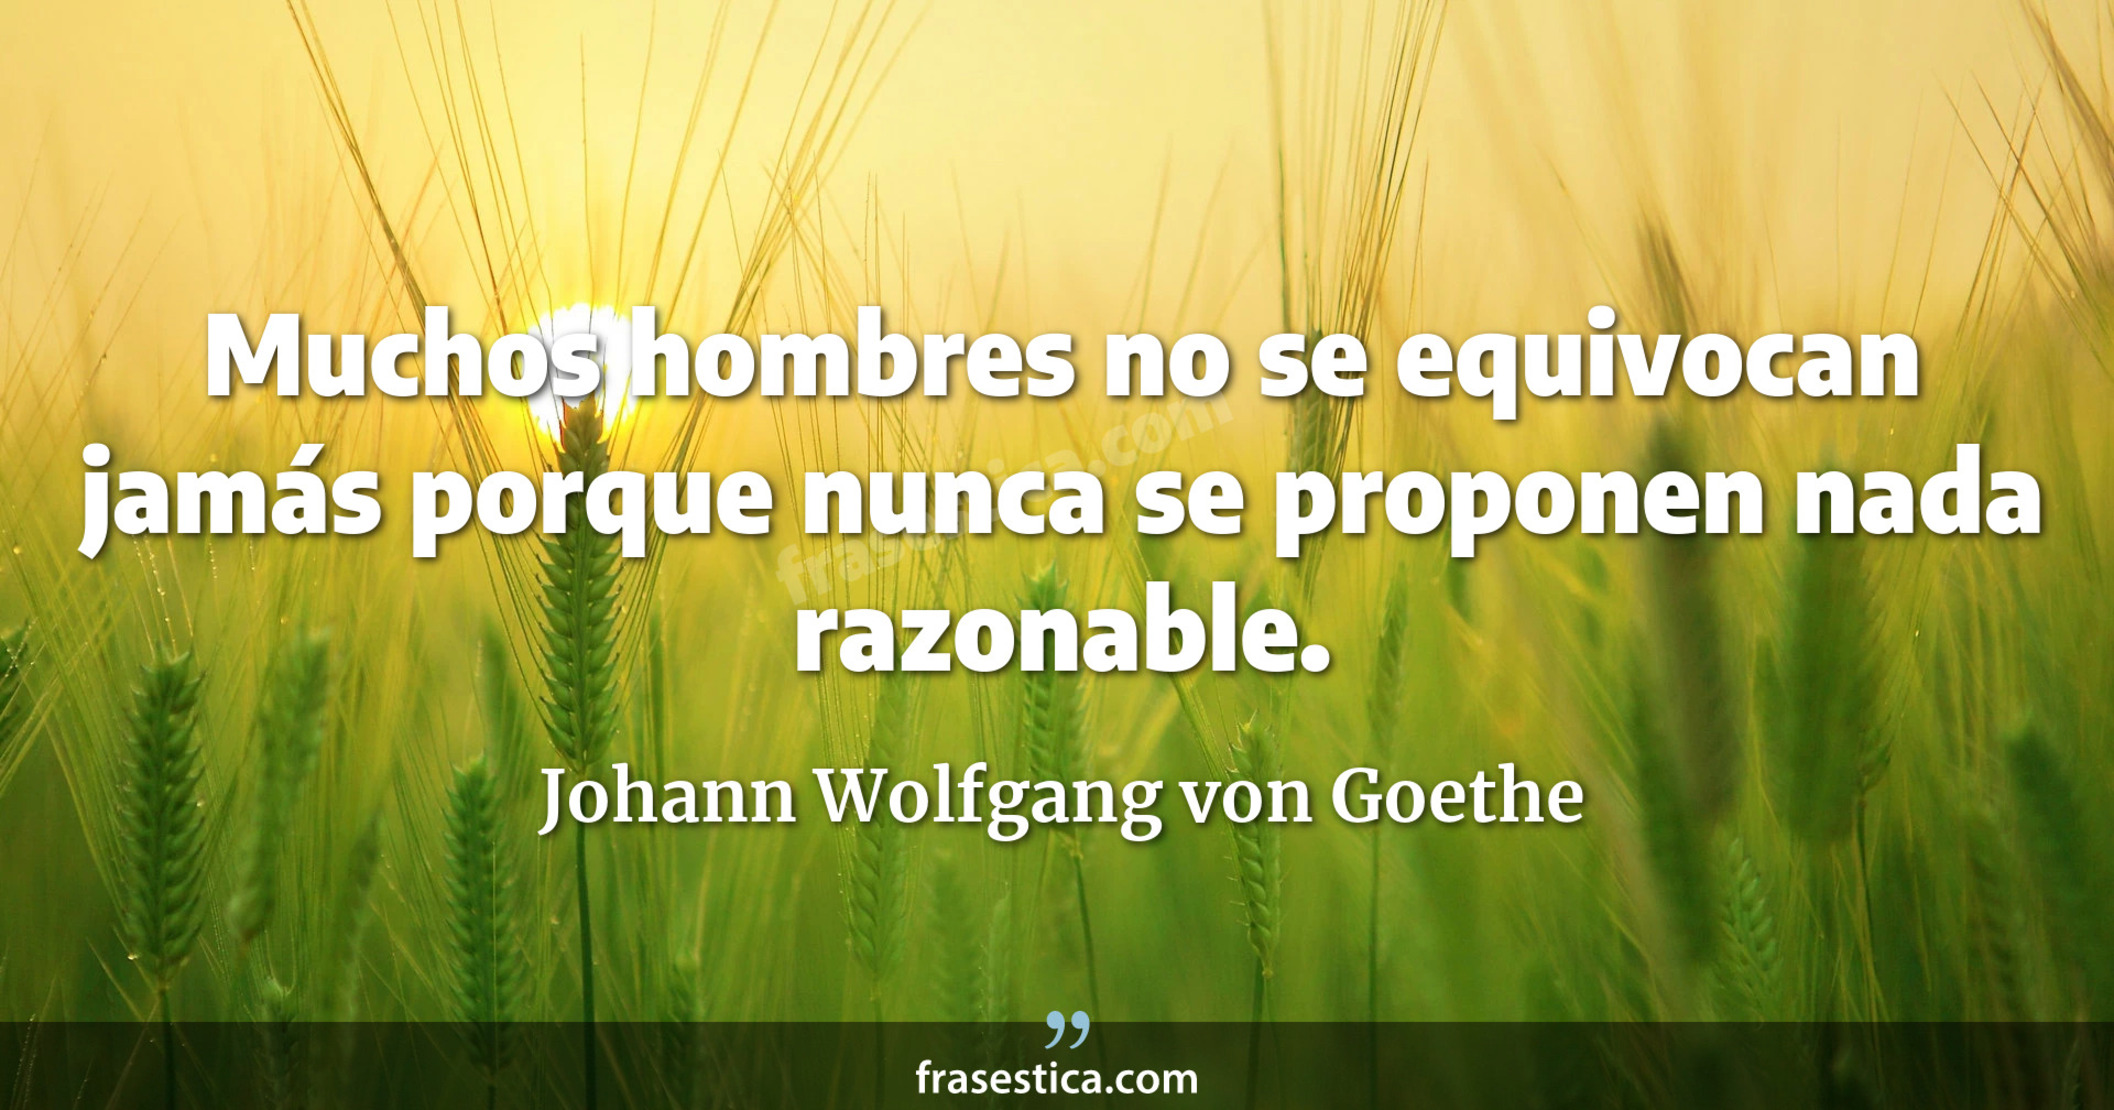 Muchos hombres no se equivocan jamás porque nunca se proponen nada razonable. - Johann Wolfgang von Goethe